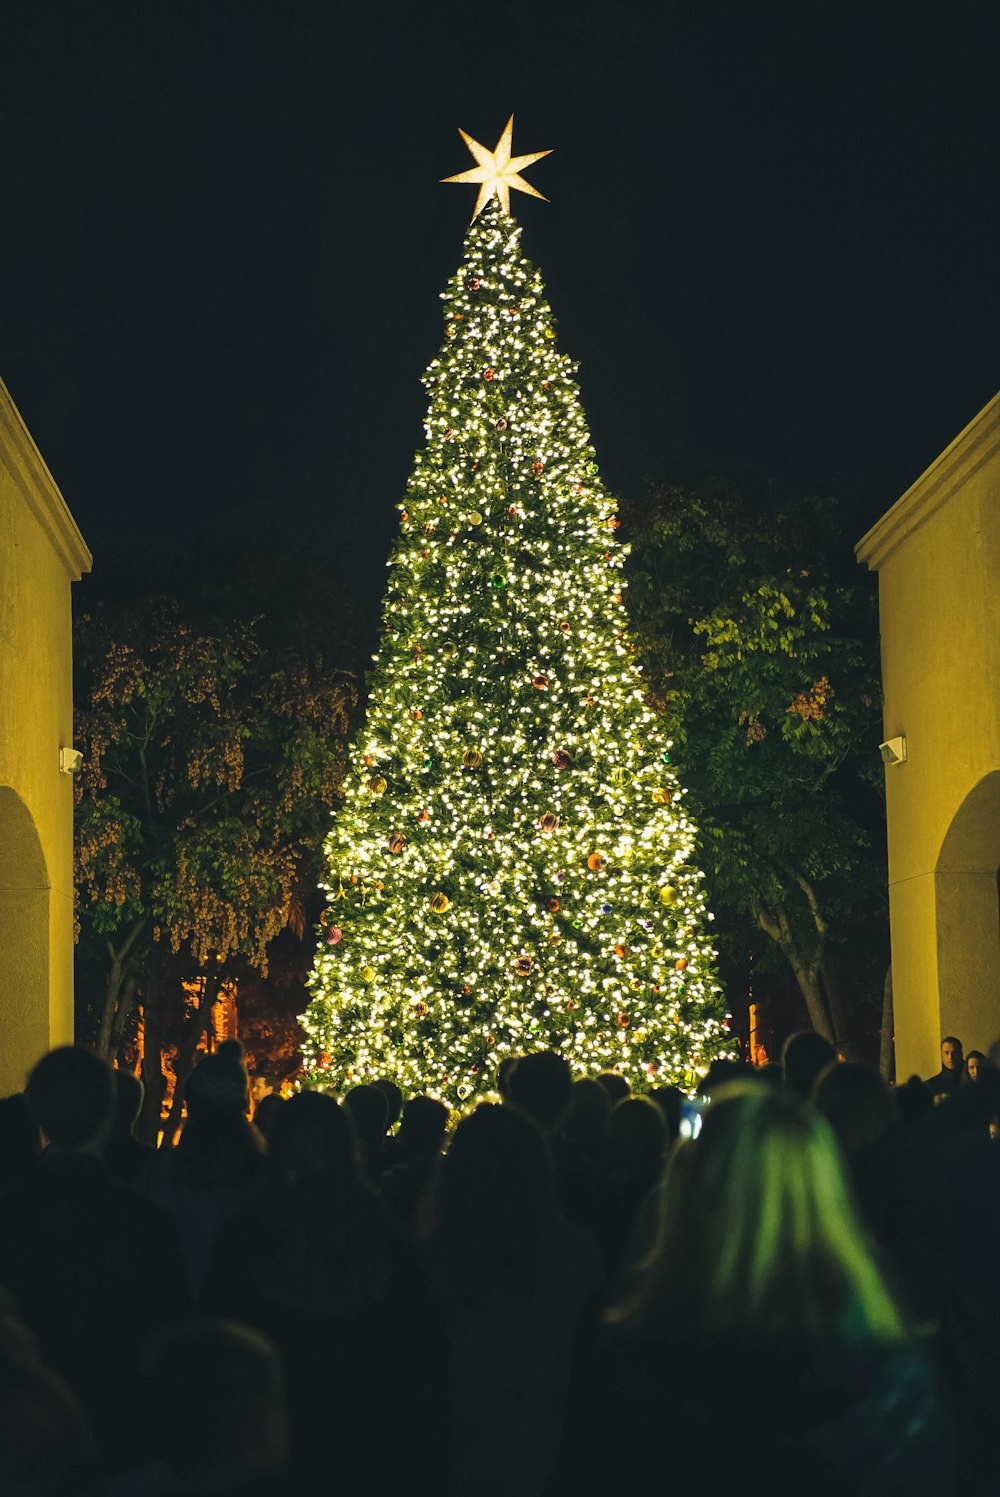 gente mirando el árbol de Navidad verde iluminado por la noche